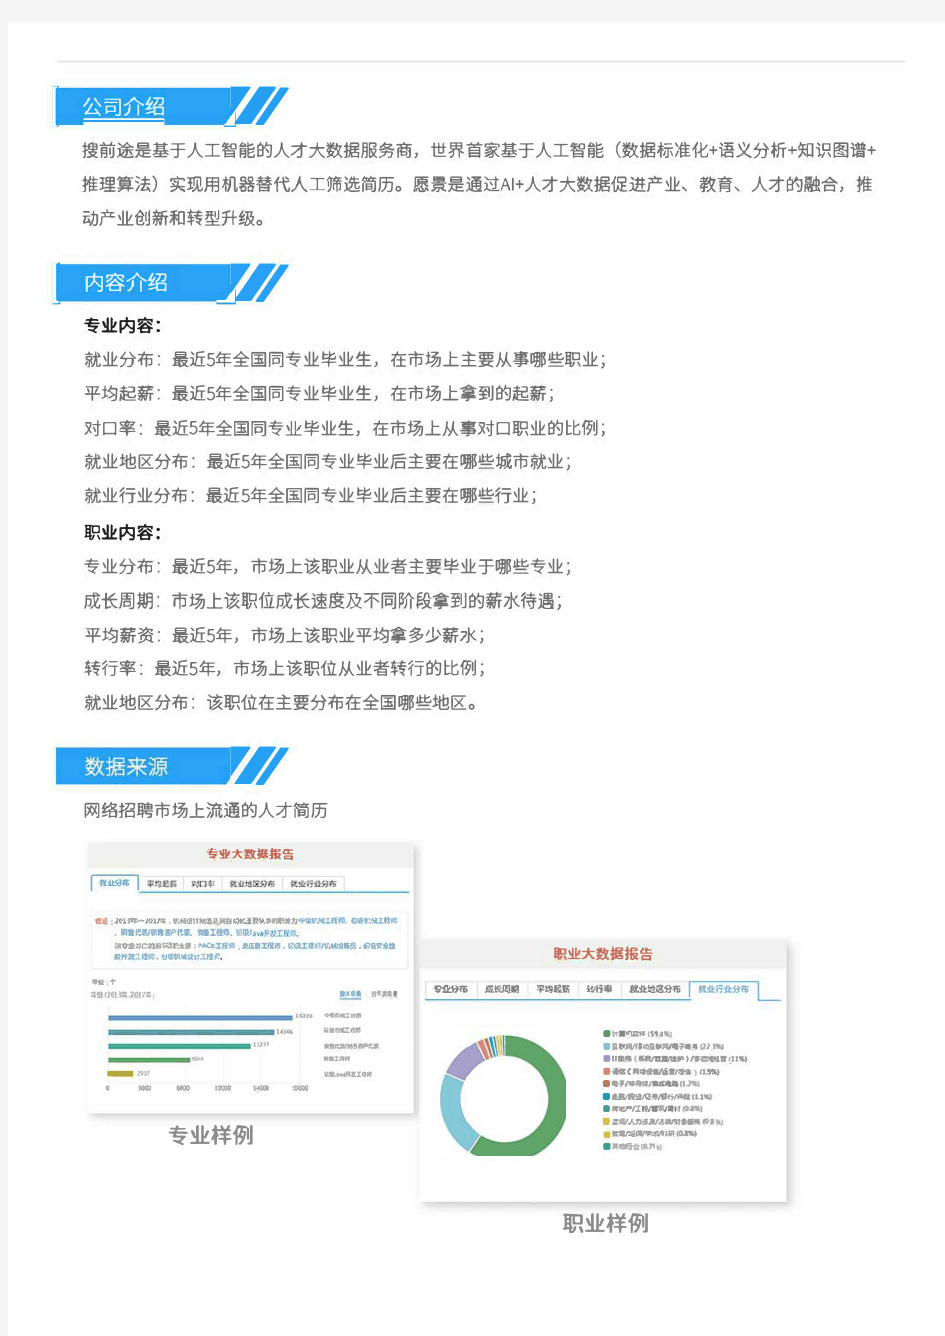 2013-2017年北京邮电大学光电信息科学与工程专业毕业生就业大数据报告